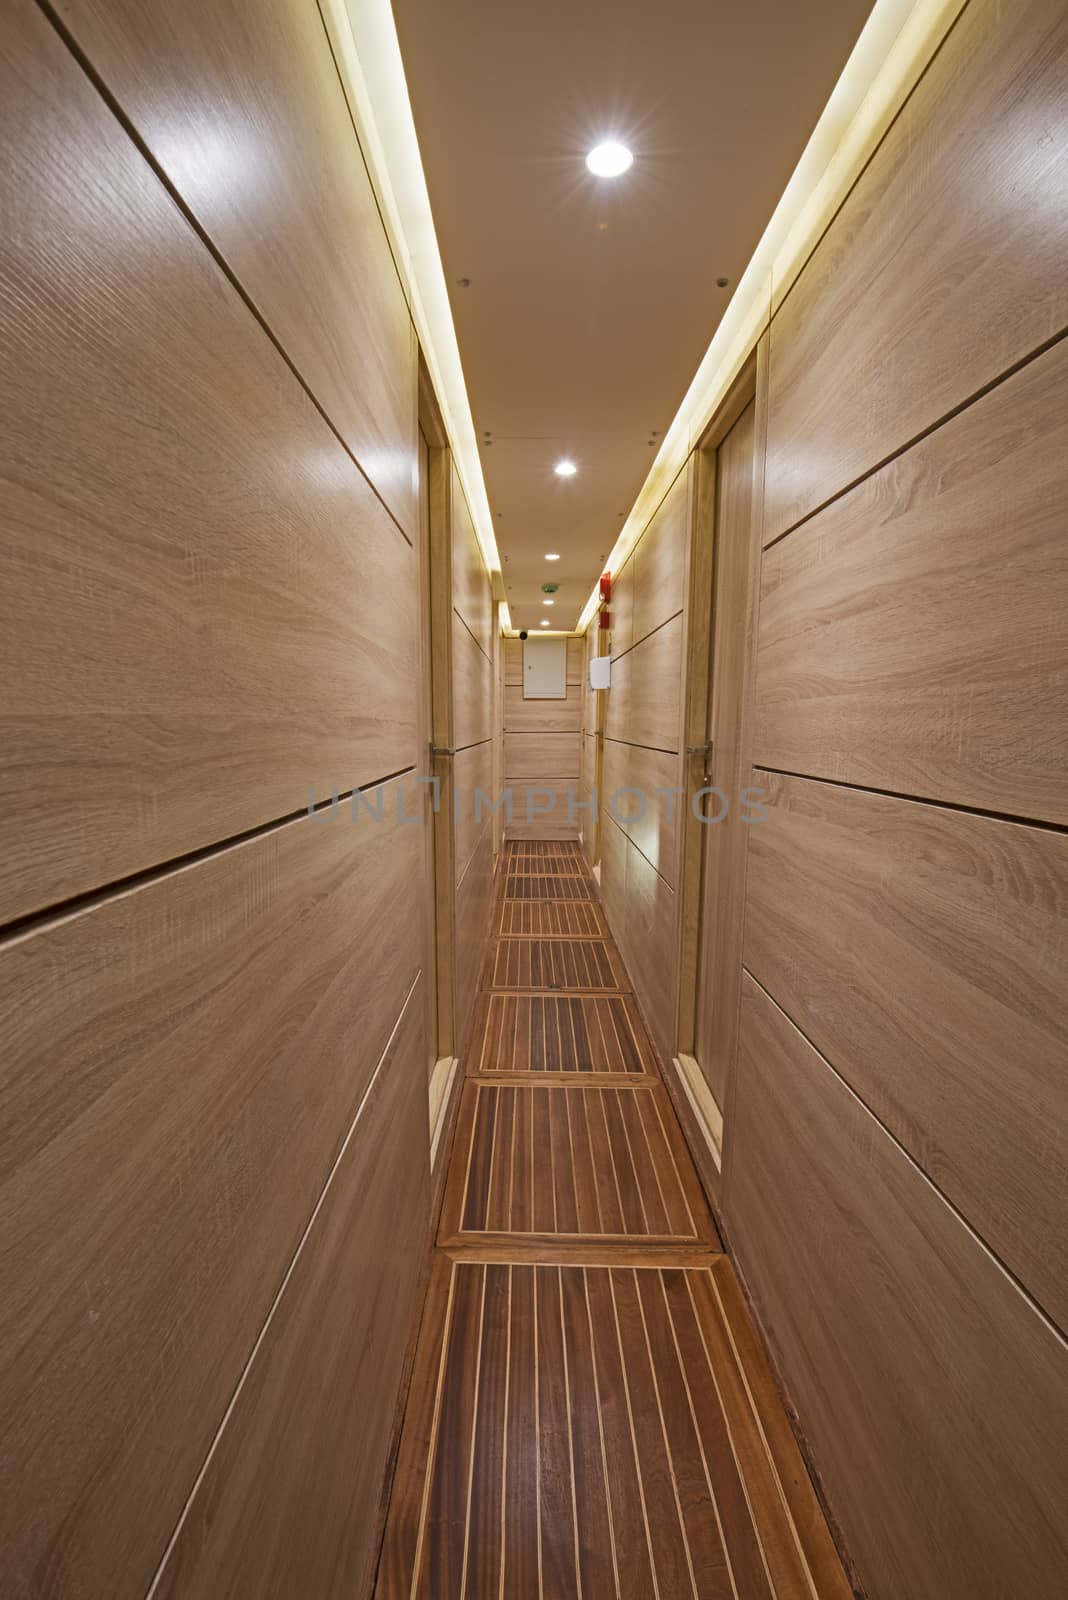 Interior of corridor area of luxury motor yacht by paulvinten